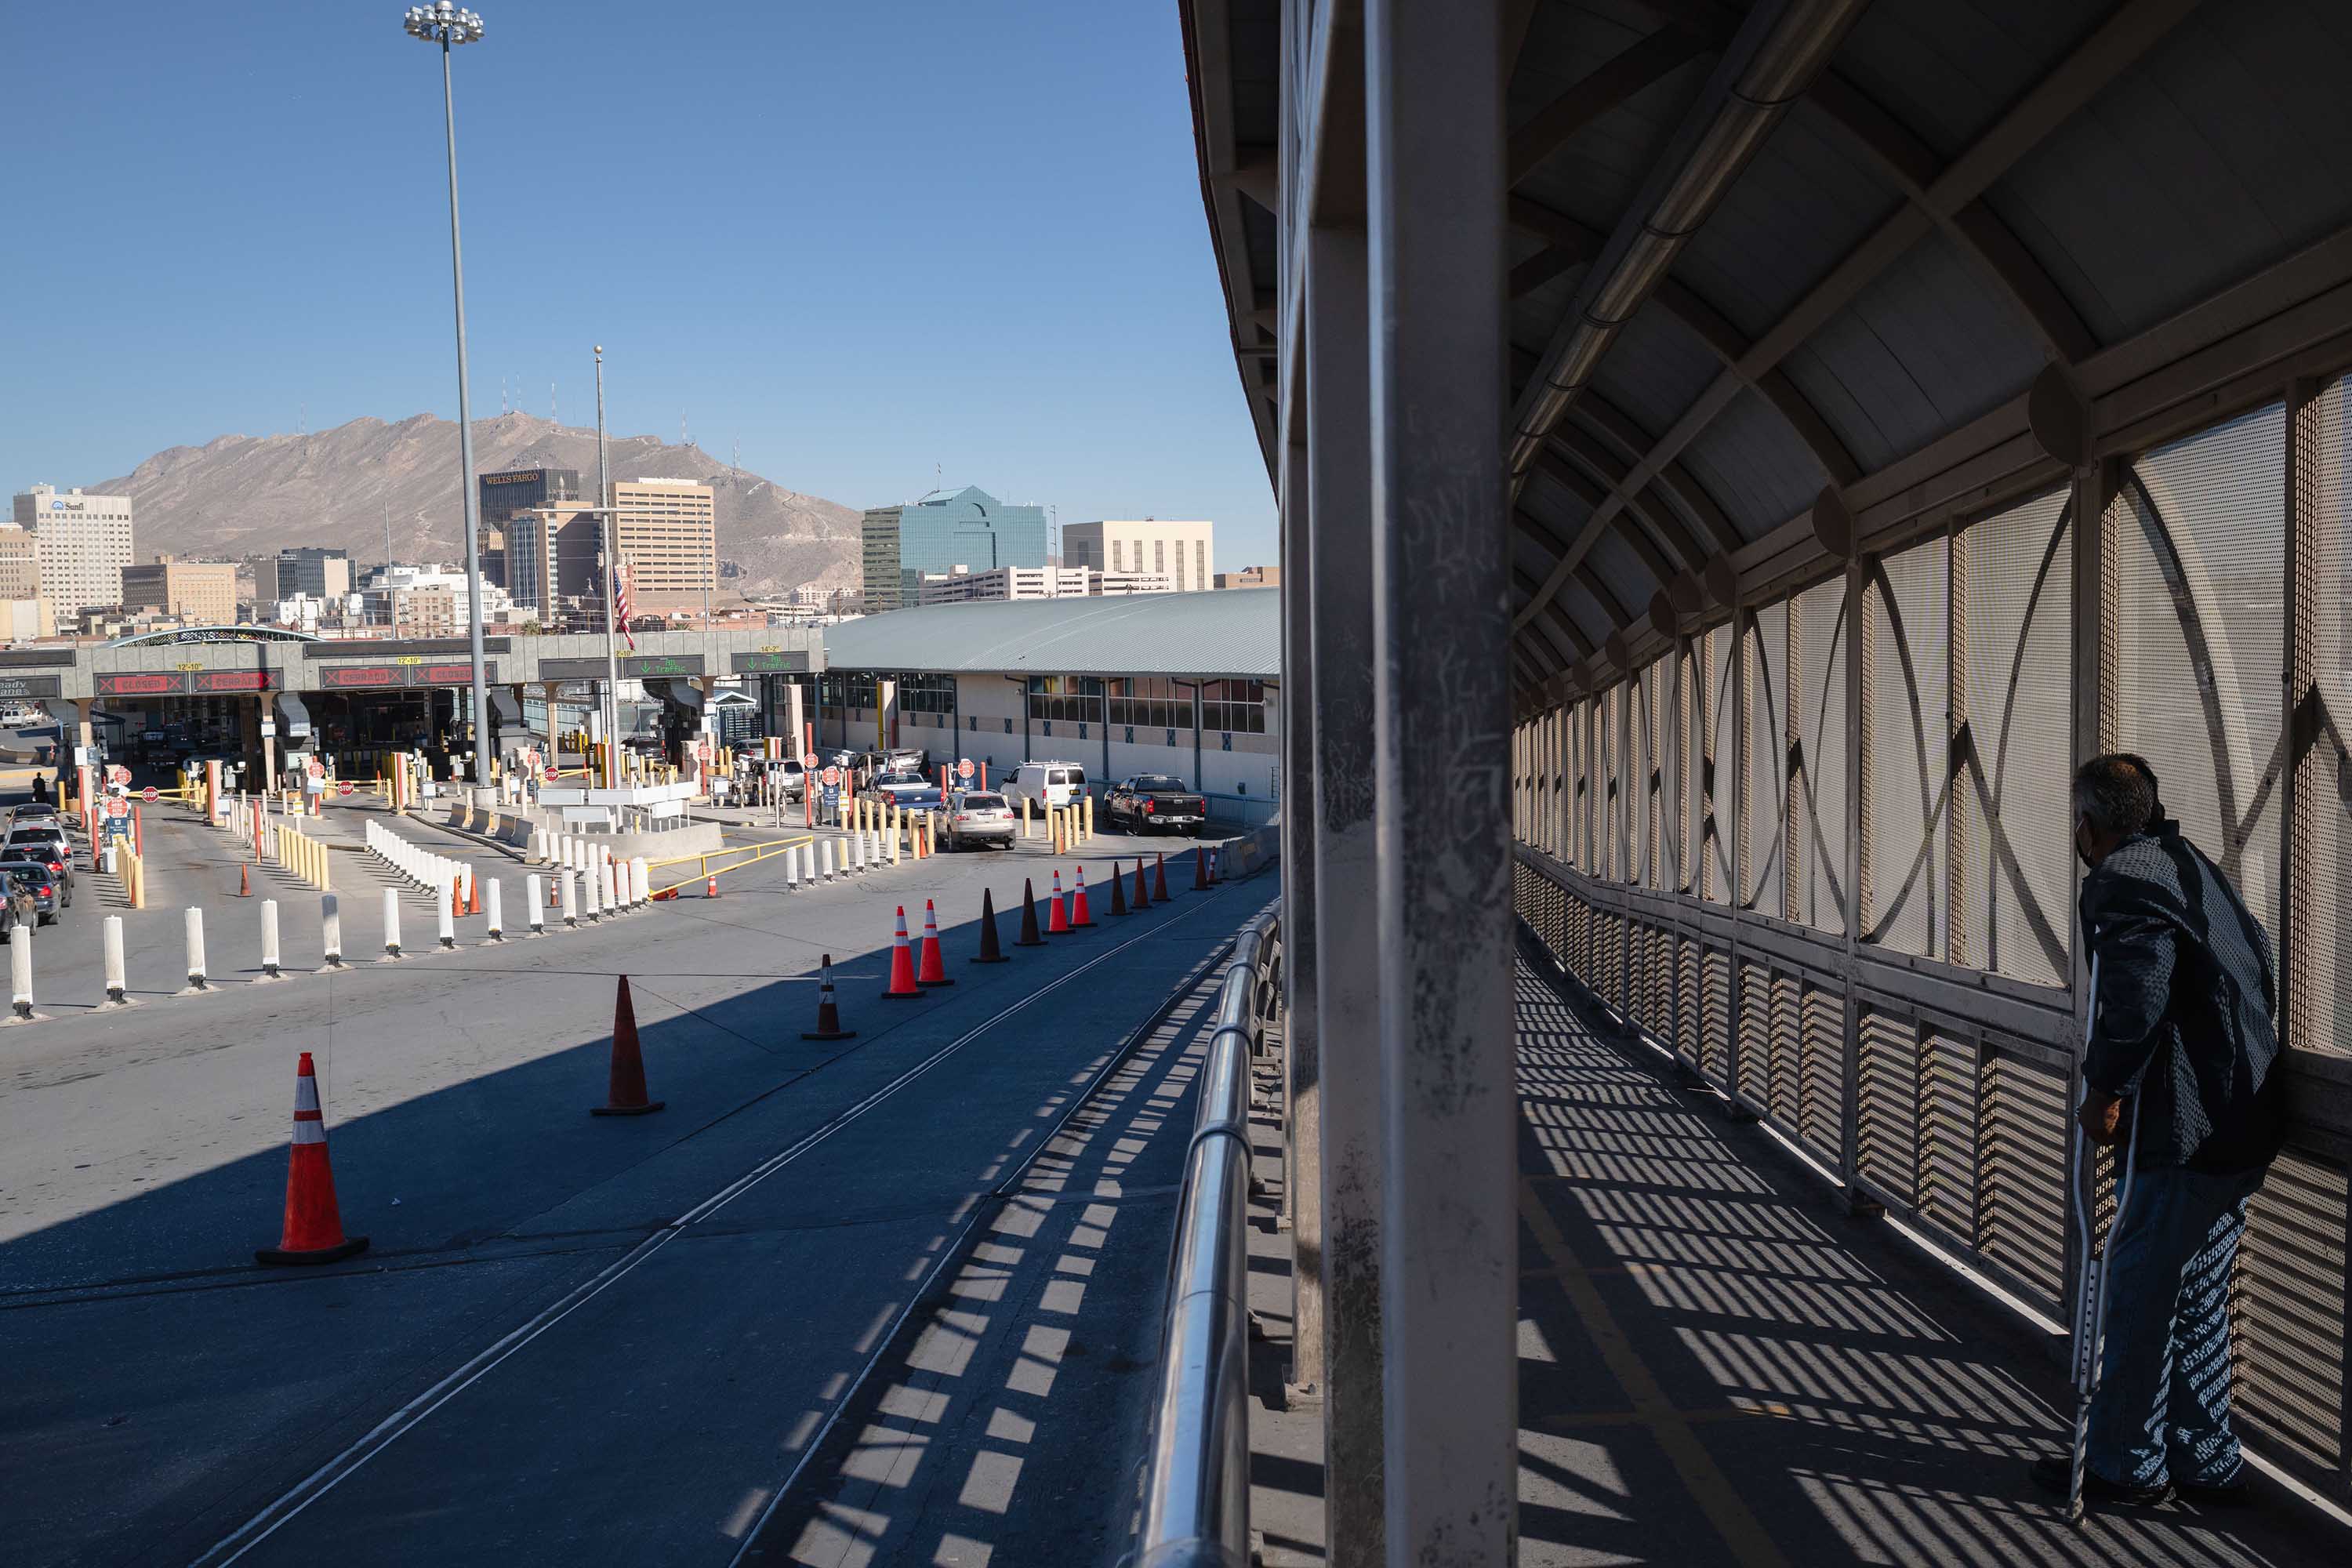 The Paso Del Norte International Bridge between El Paso, Texas and Ciudad Juárez in Mexico is seen on November 16.